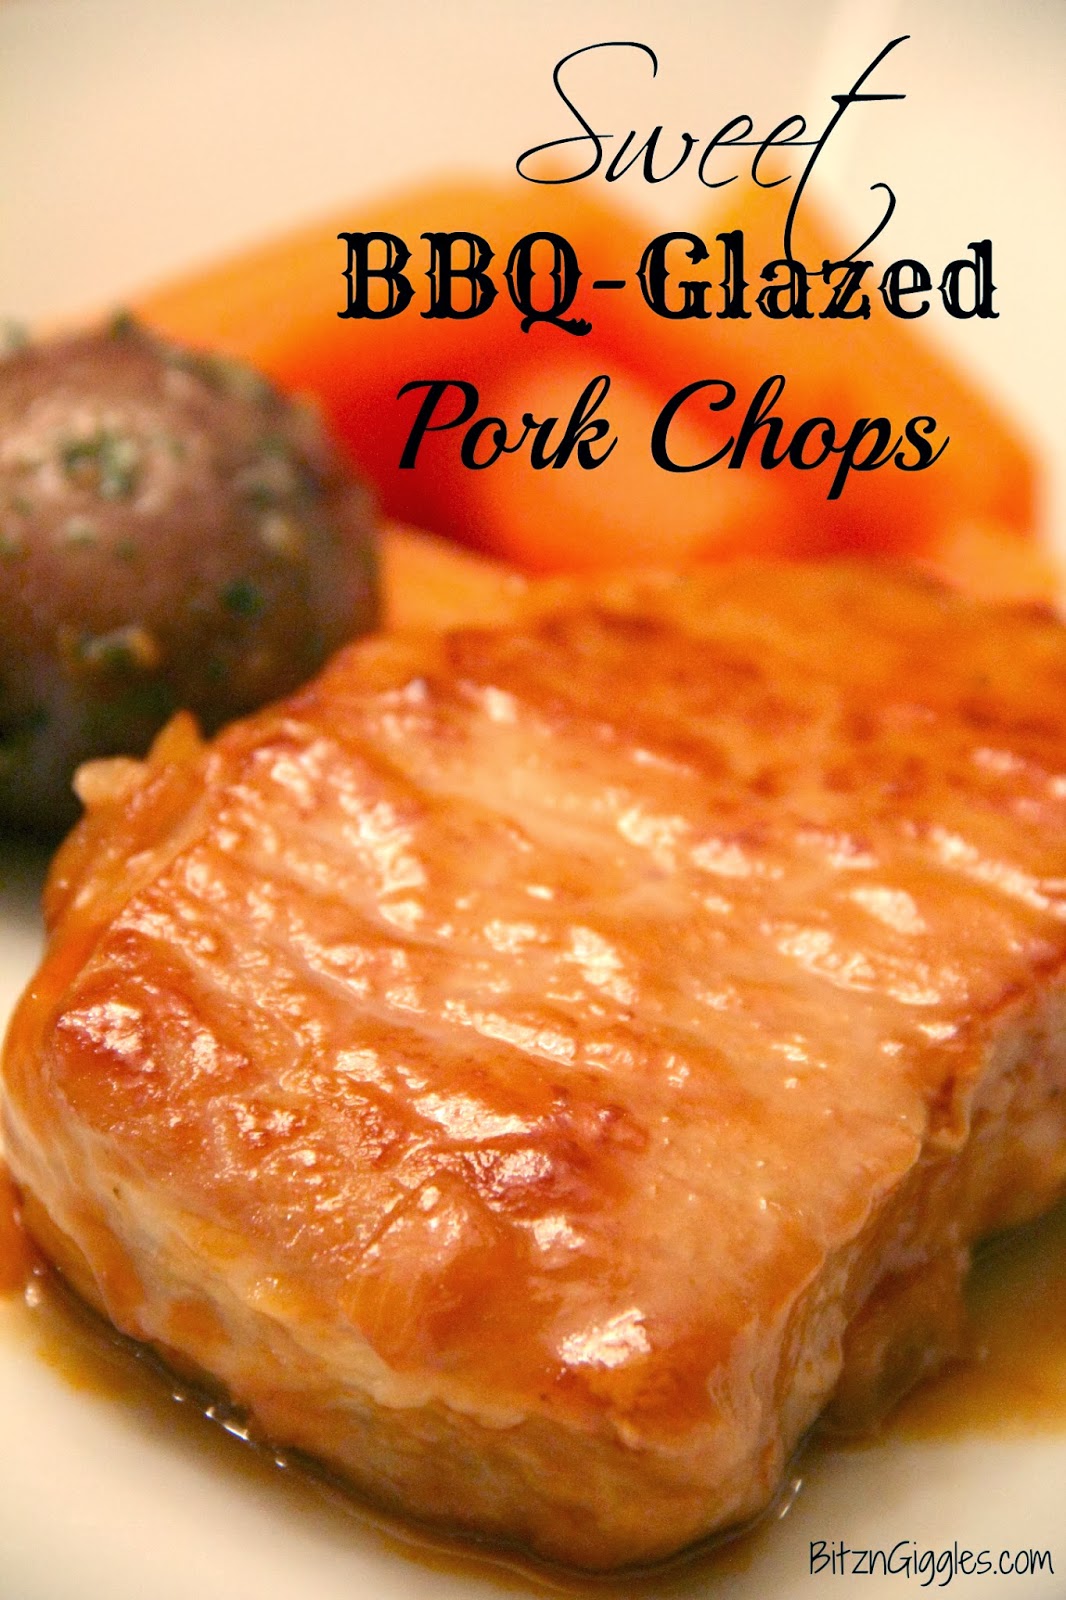 https://www.bitzngiggles.com/2014/02/sweet-bbq-glazed-pork-chops.html